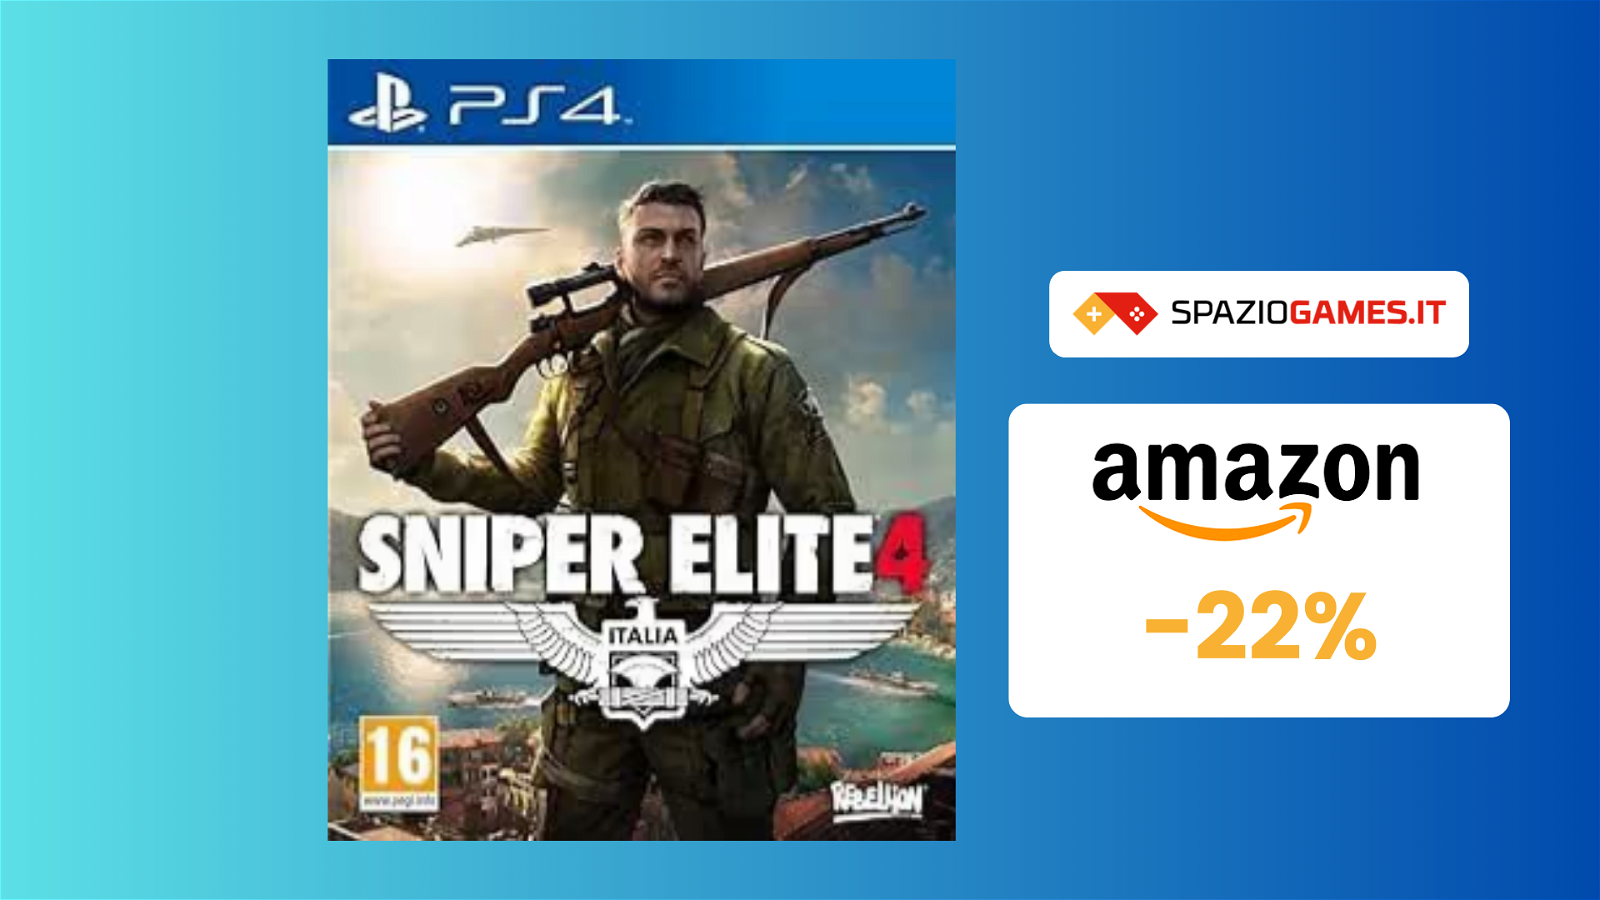 Sniper Elite 4 per PS4 al prezzo TOP di 19€! -22%!